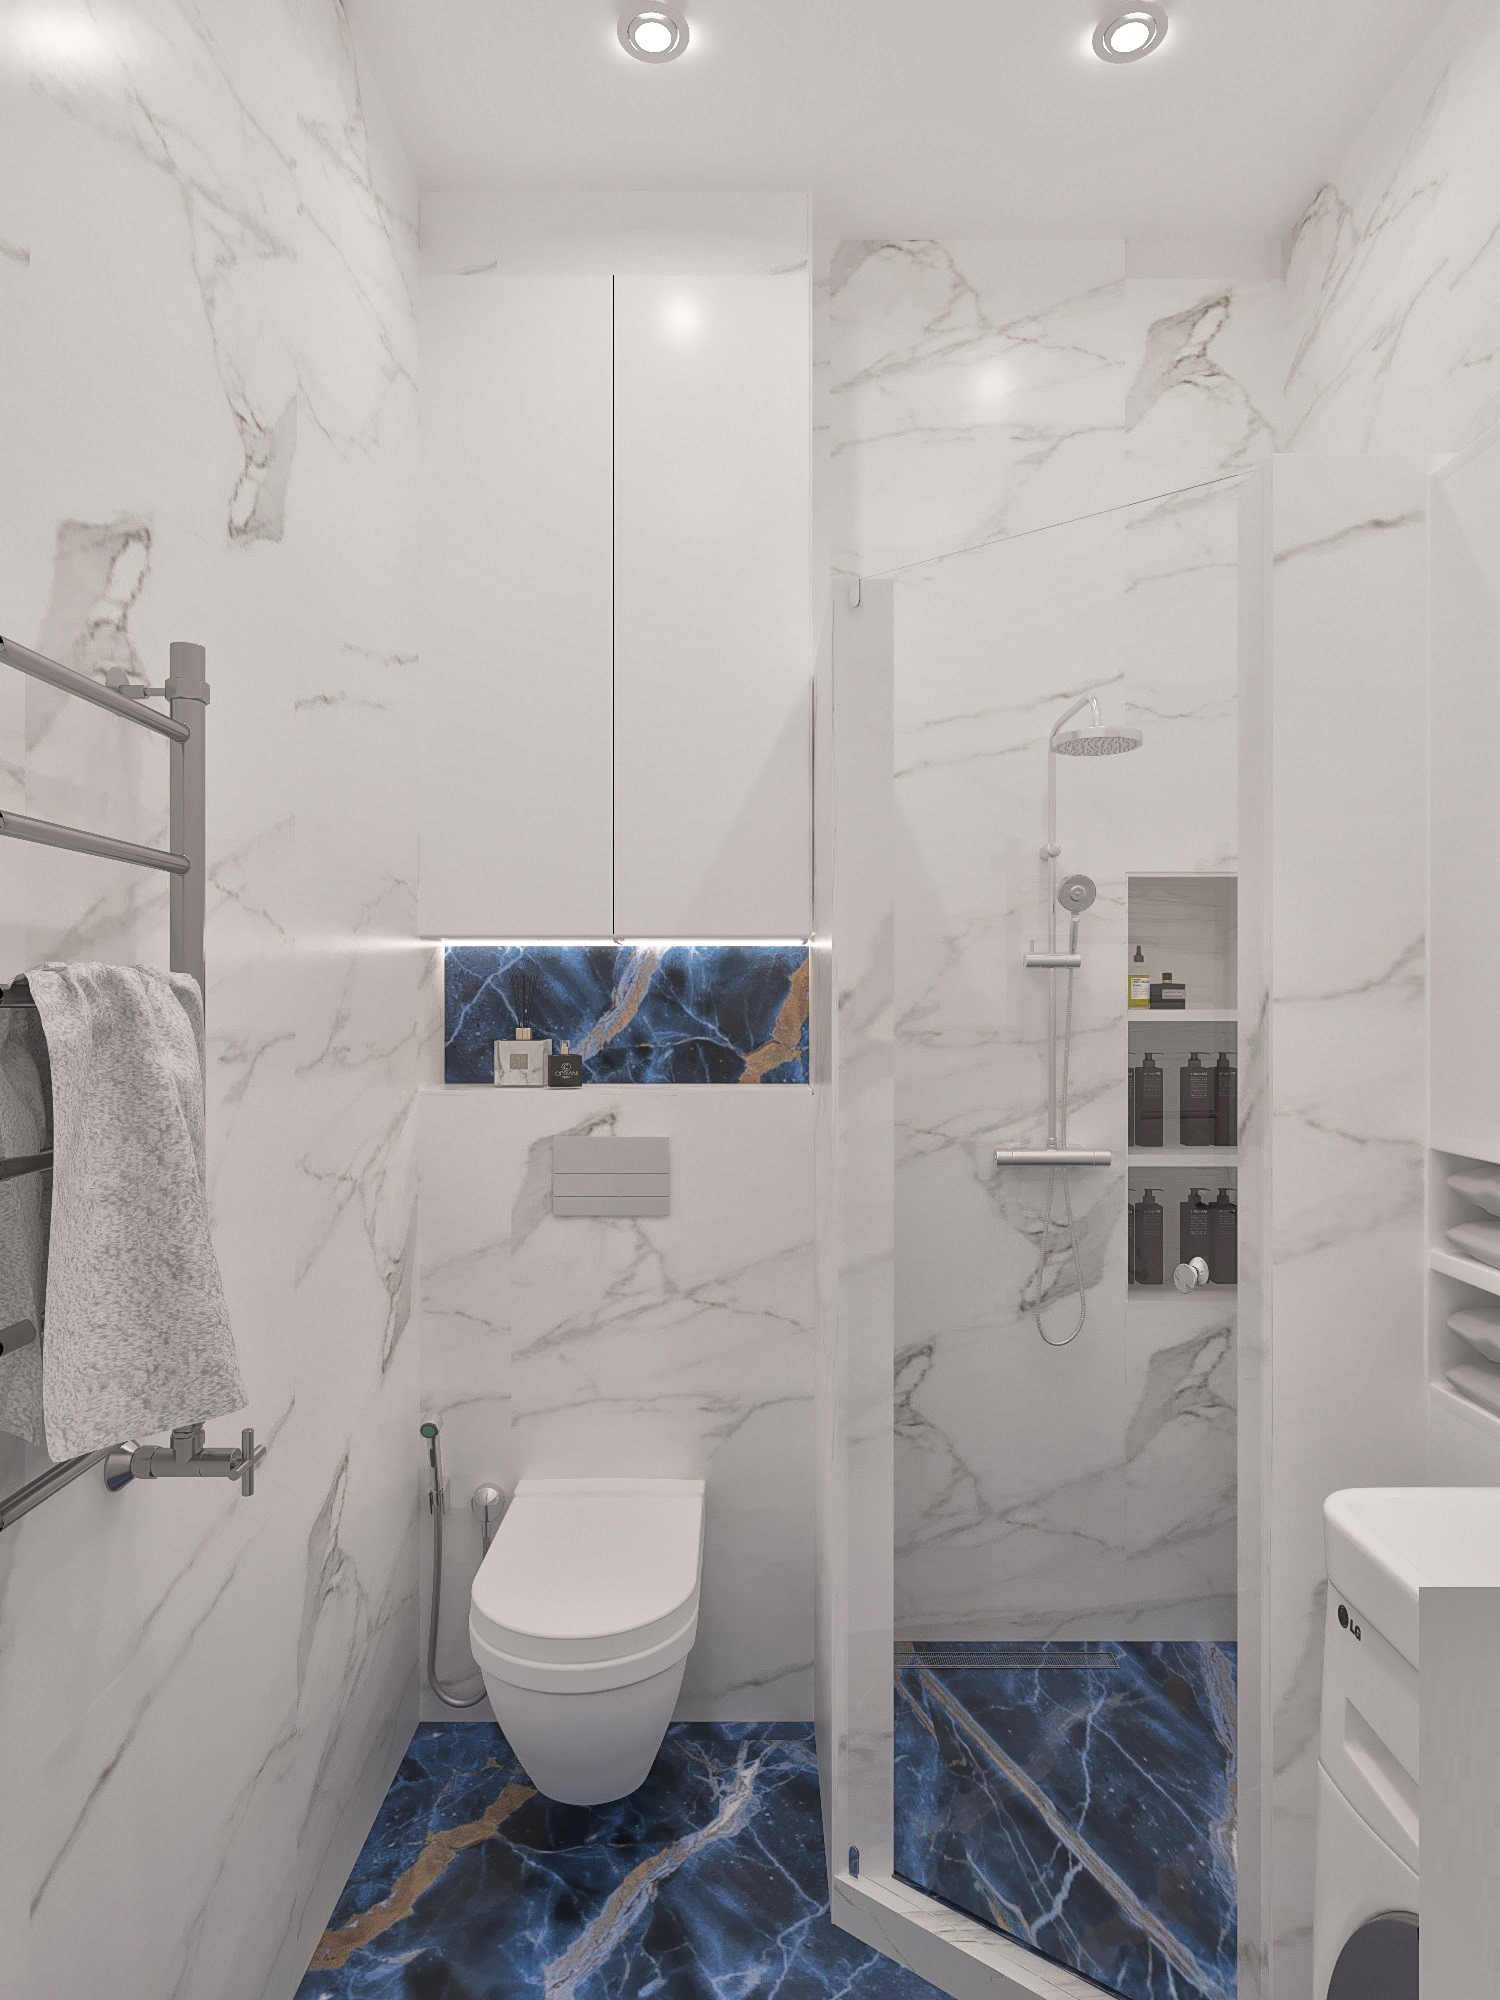 Фото № 6: Современный дизайн ванной комнаты